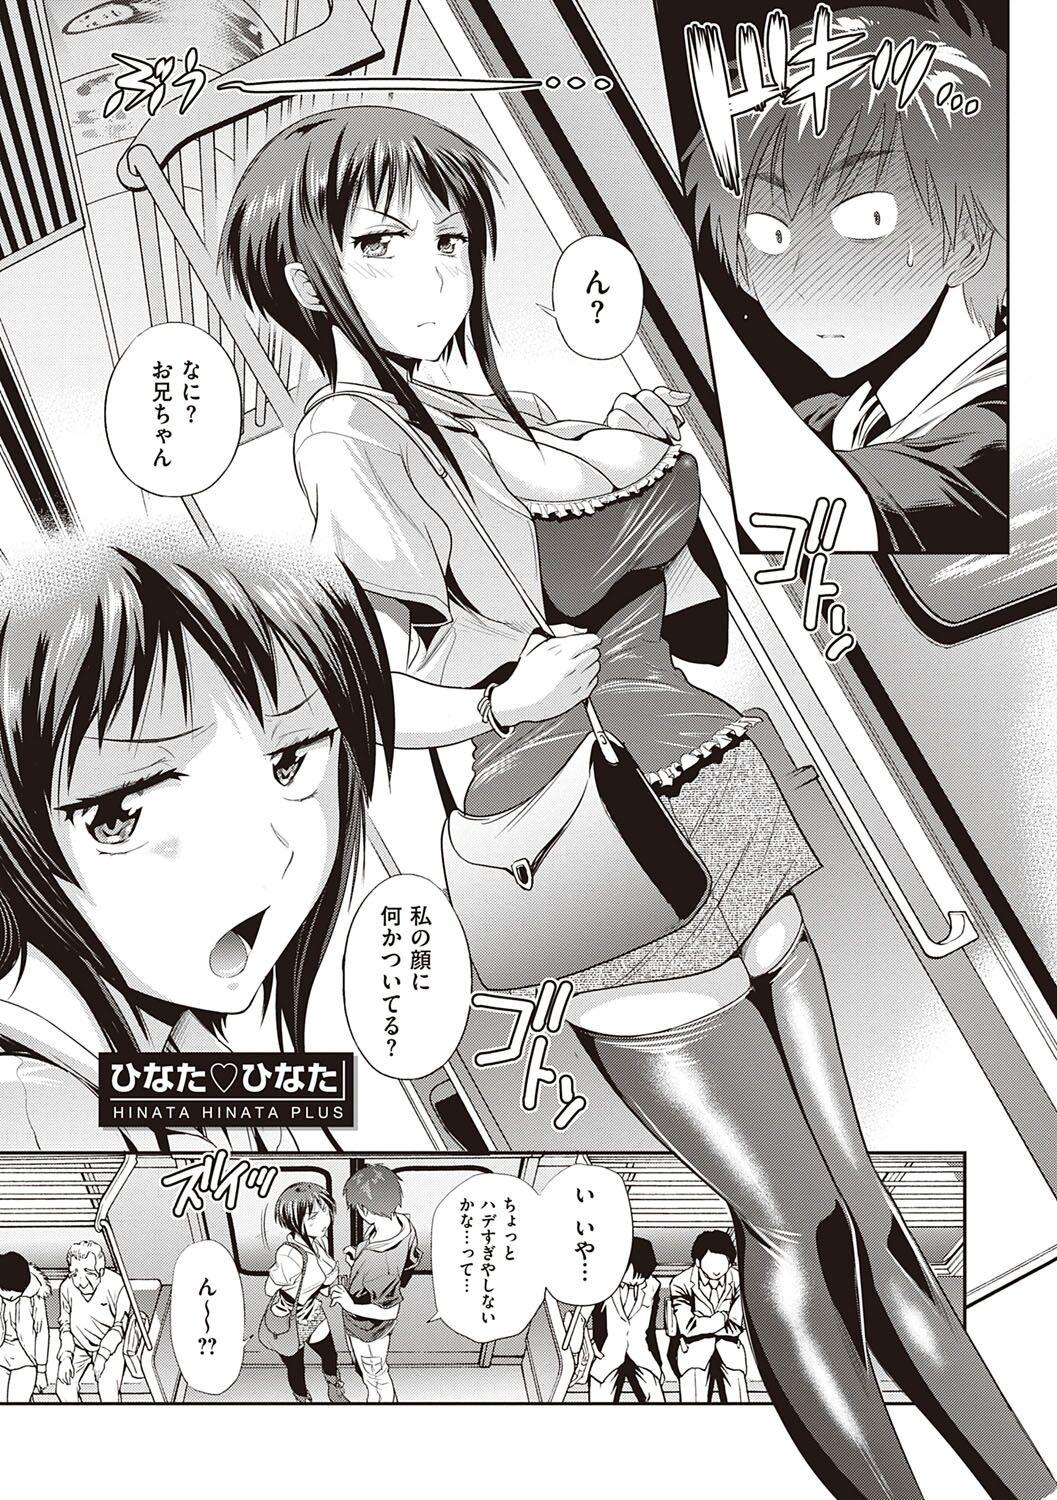 This Hinata Hinata plus Fist - Page 8